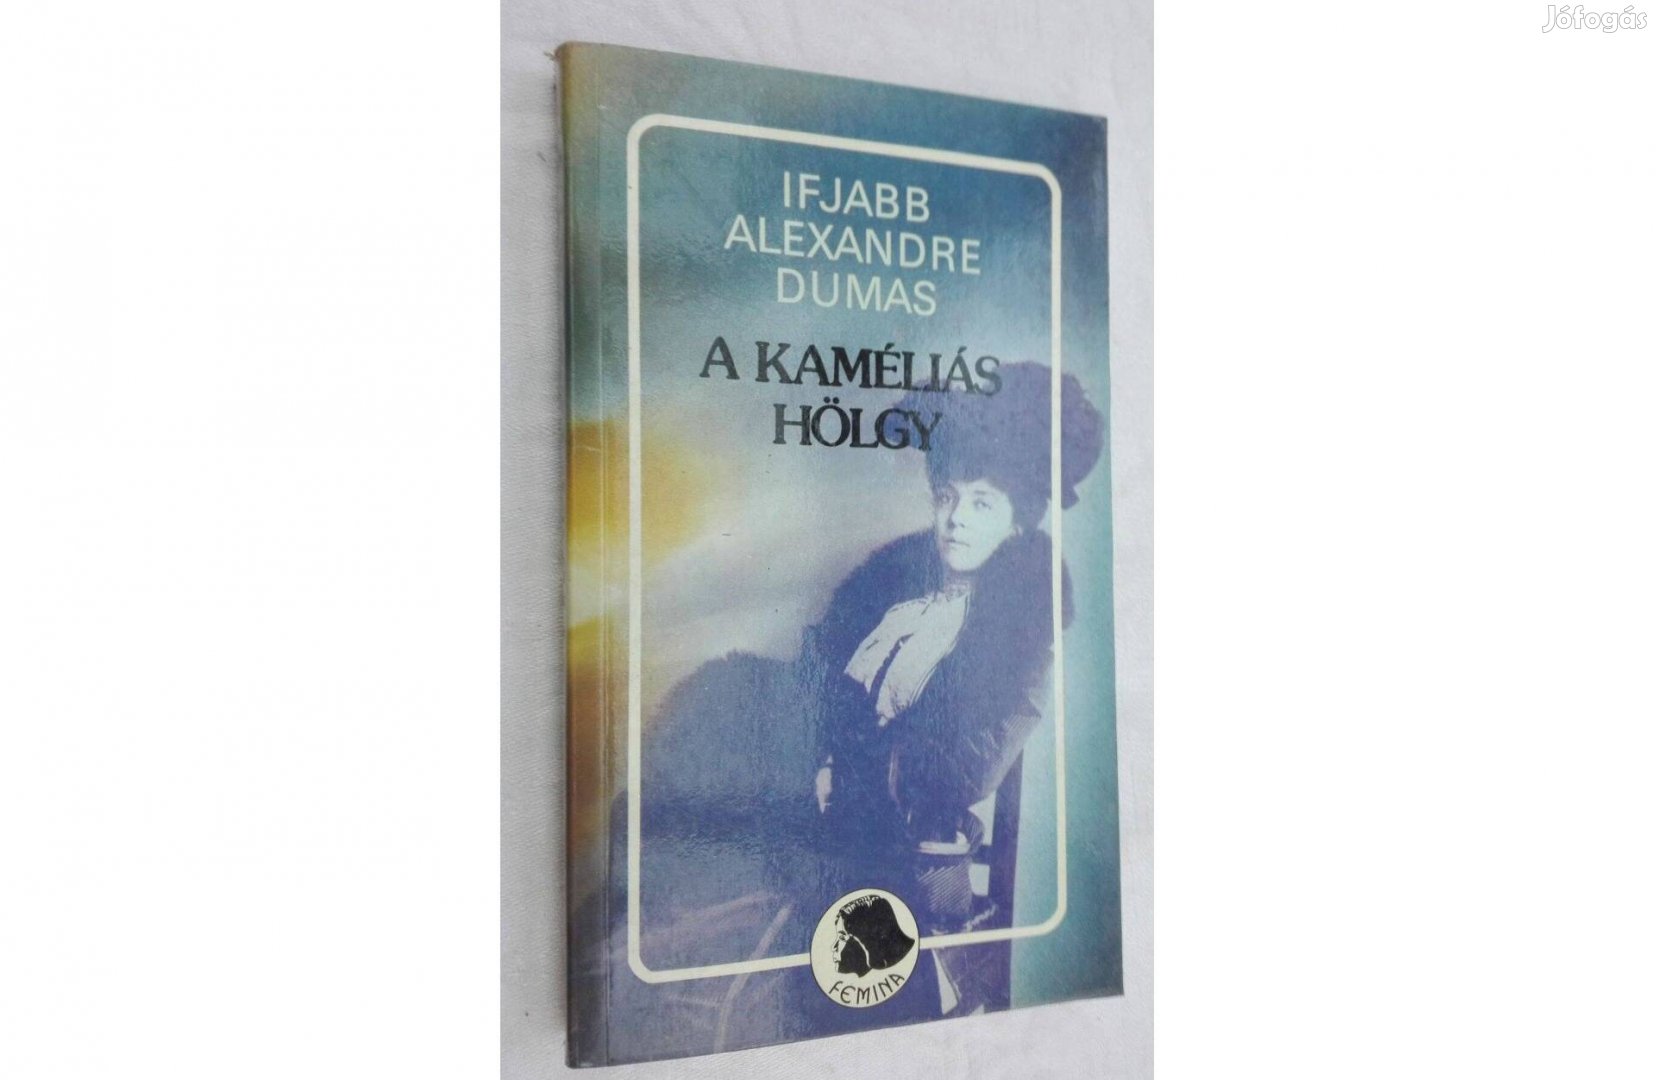 Ifjabb Alexandre Dumas: A kaméliás hölgy, olvasatlan, Femina könyv